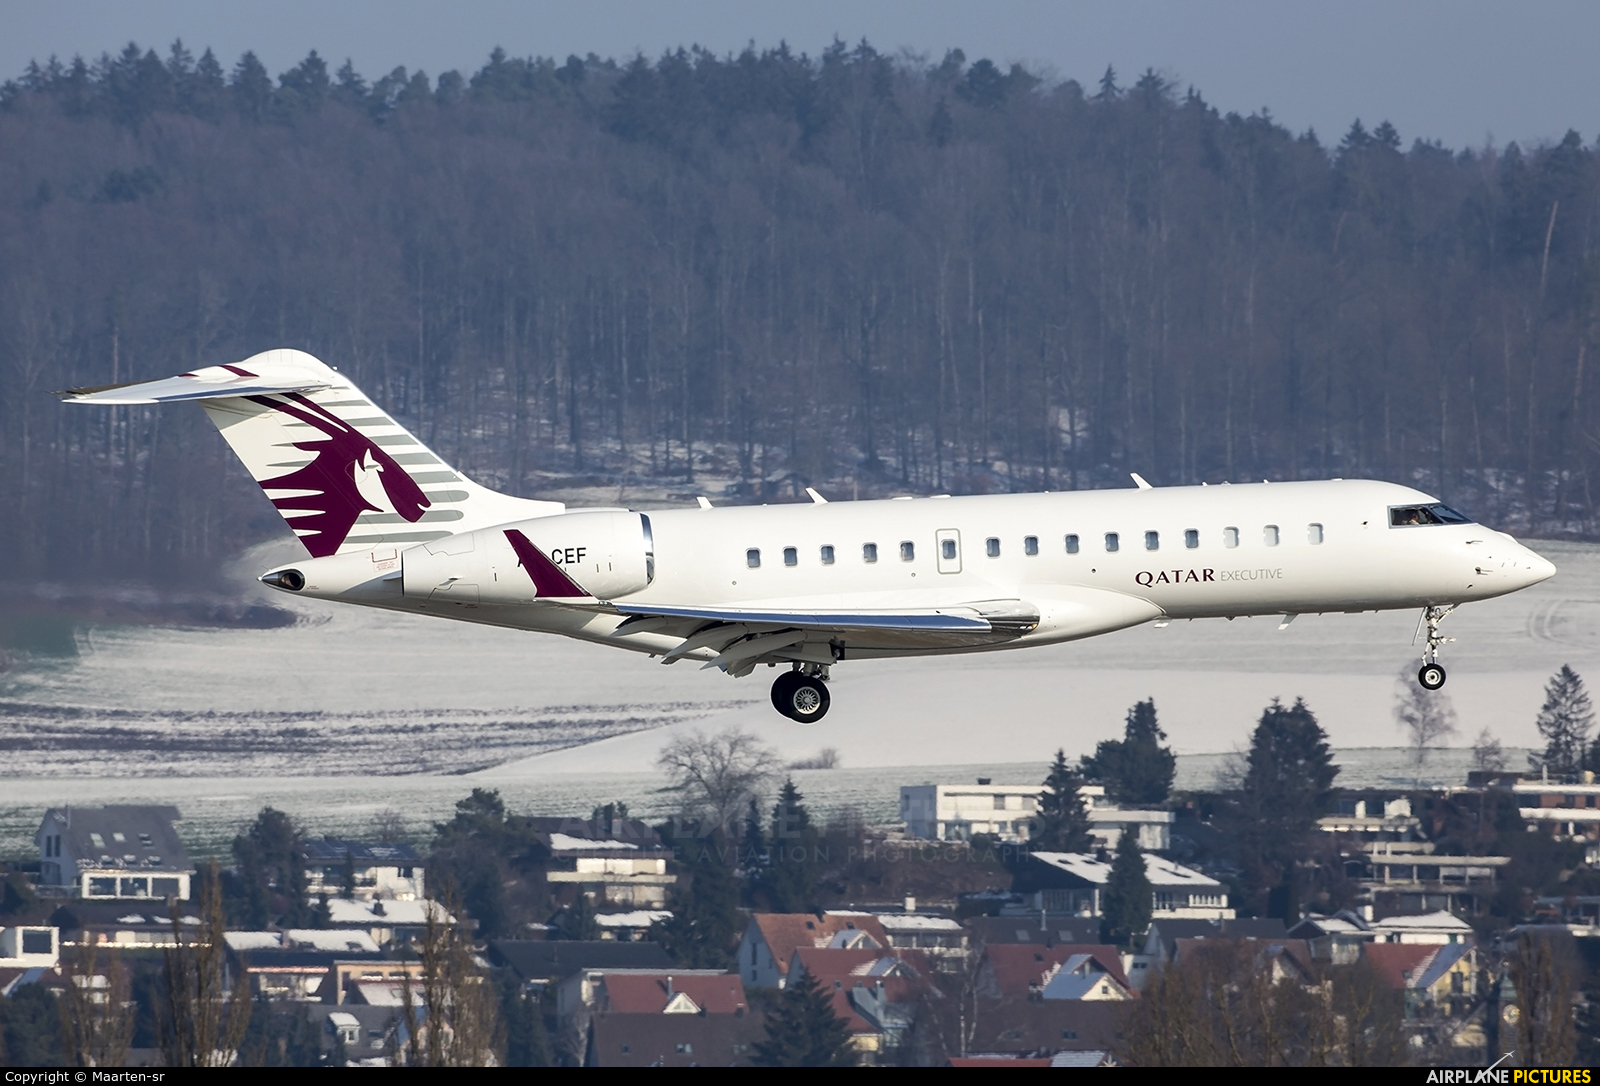 Qatar Executive A7-CEF aircraft at Zurich